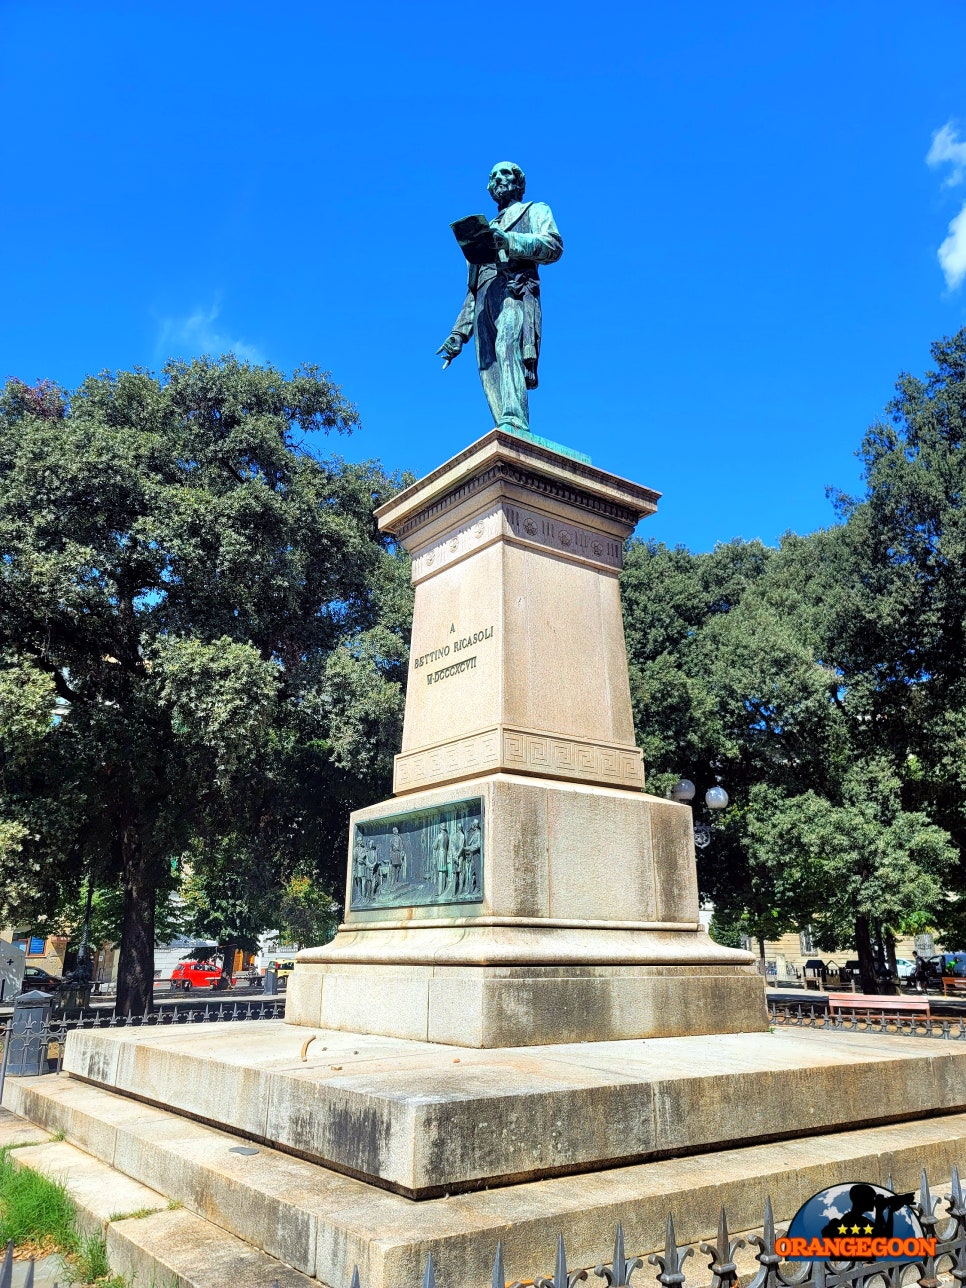 (이탈리아 피렌체 / 독립광장) 베티노 리카솔리, 우발디노 페루치의 동상이 세워져 있는 작은 광장. 인디펜덴차 광장 Piazza della Indipendenza